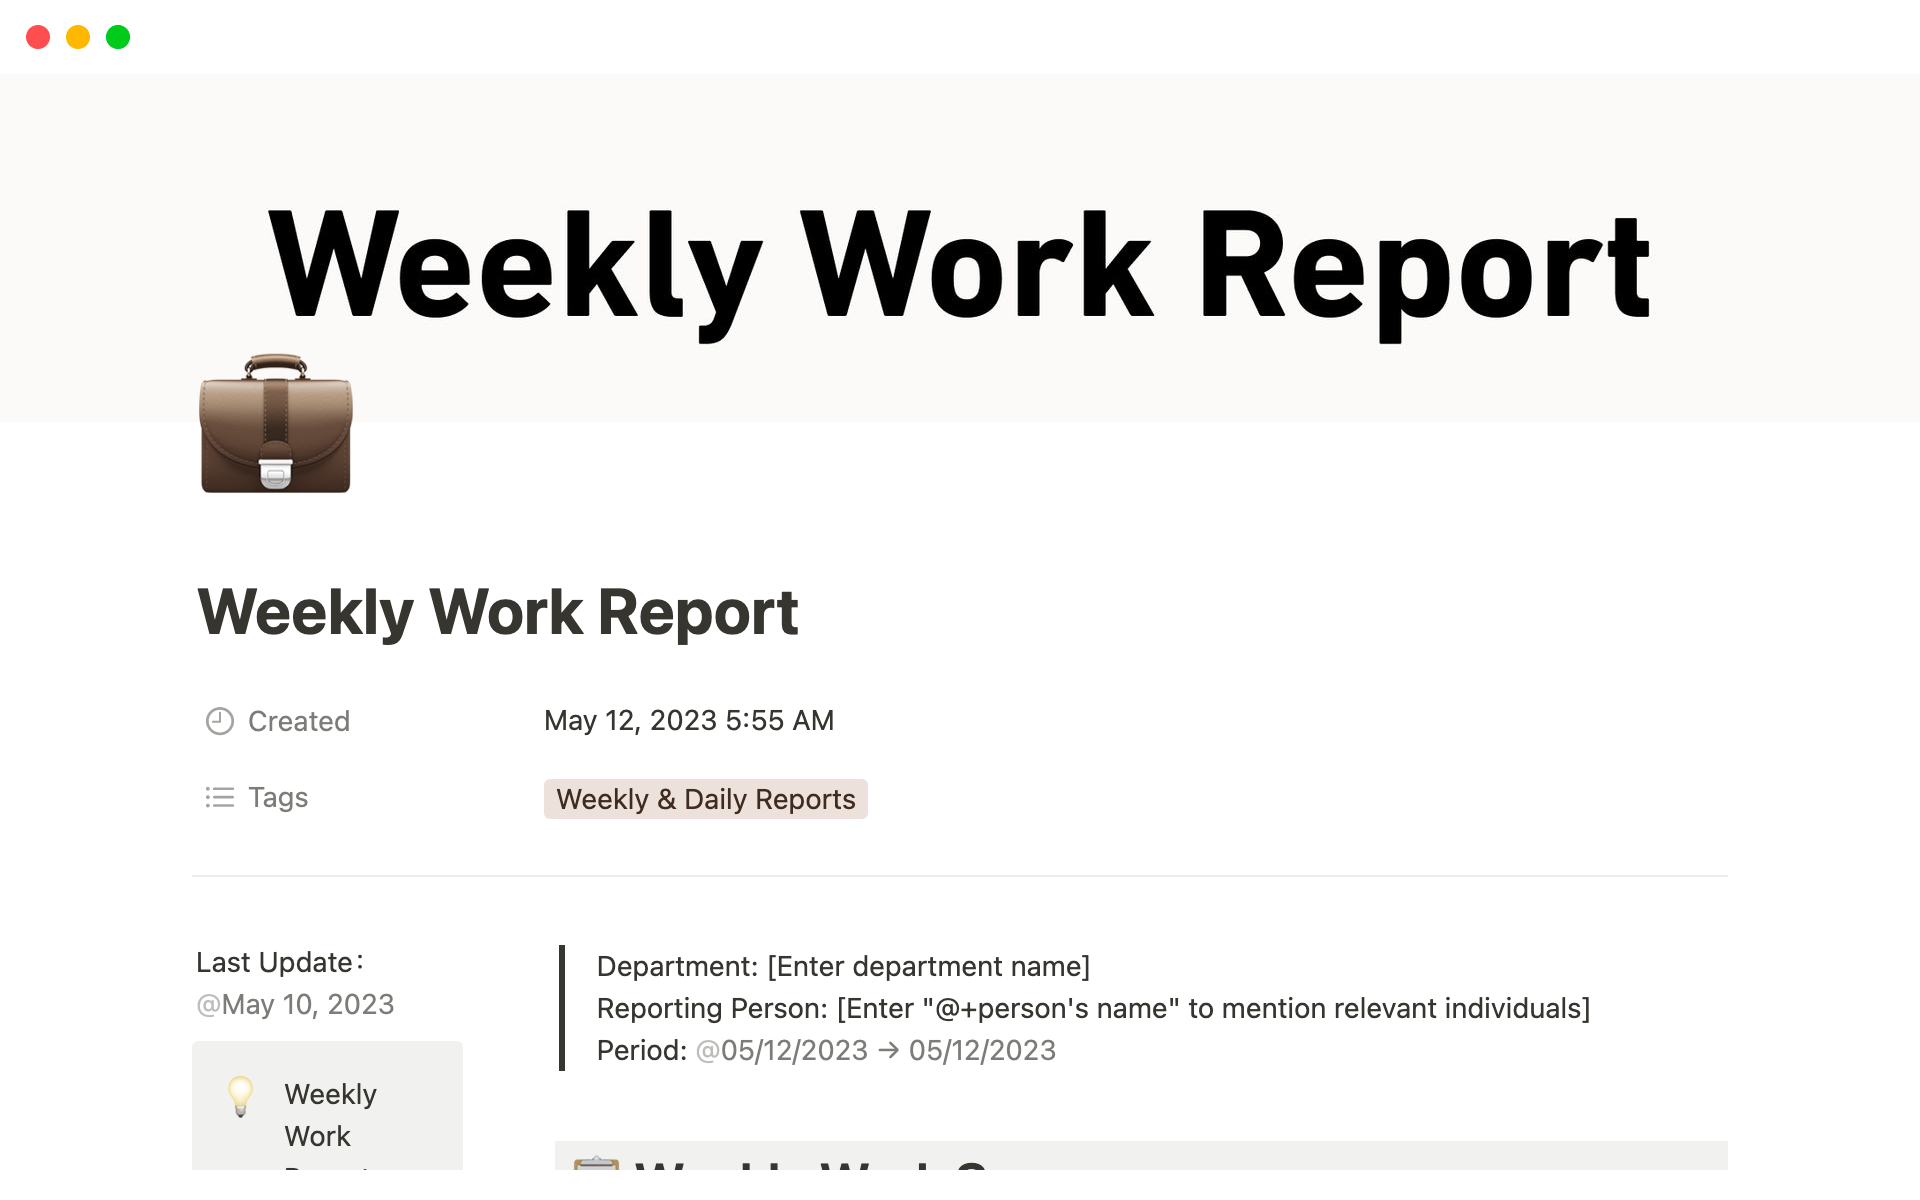 Uma prévia do modelo para Weekly Work Report